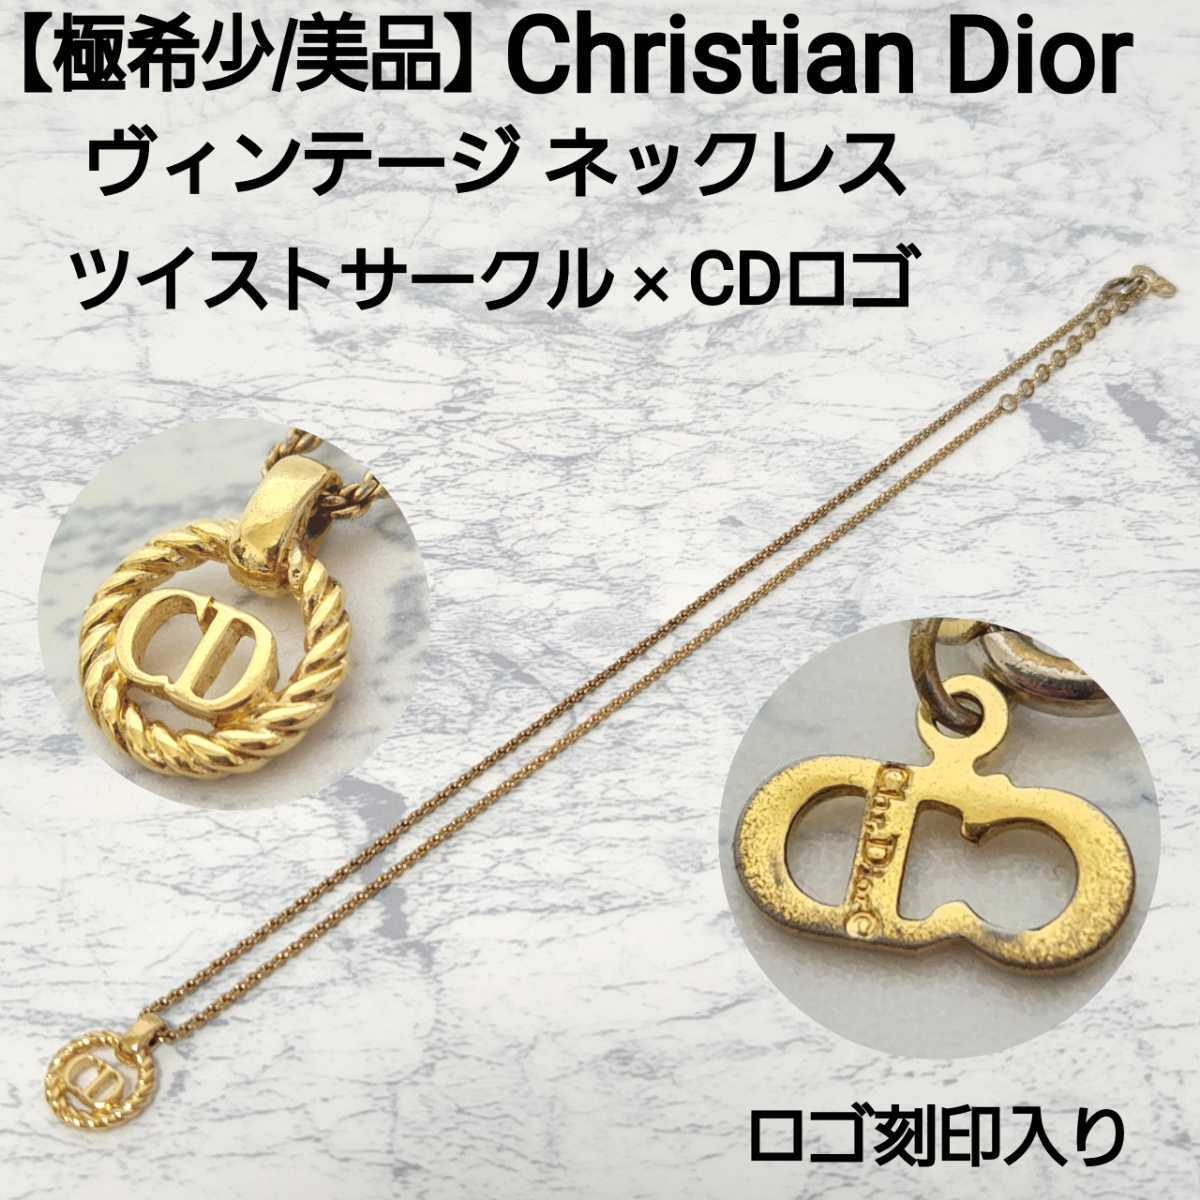 【極希少/美品】Christian Dior クリスチャンディオール ヴィンテージ ネックレス ツイストサークル イニシャルロゴ CDロゴ ゴールド